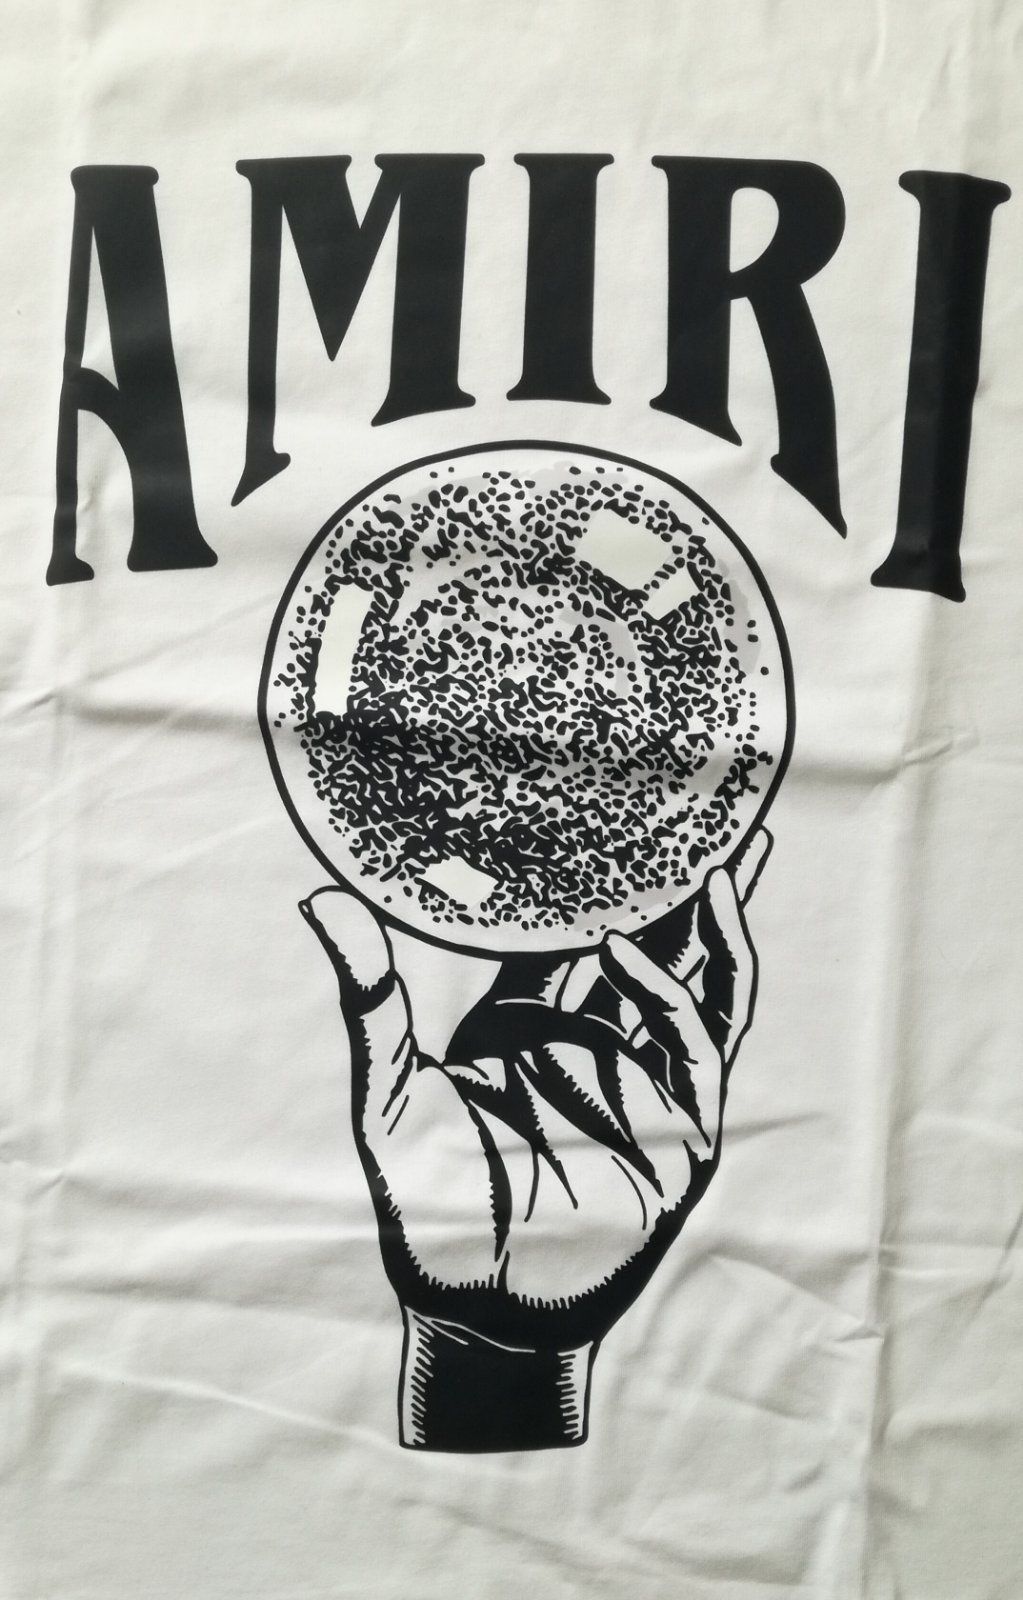 Нова Amiri тениска